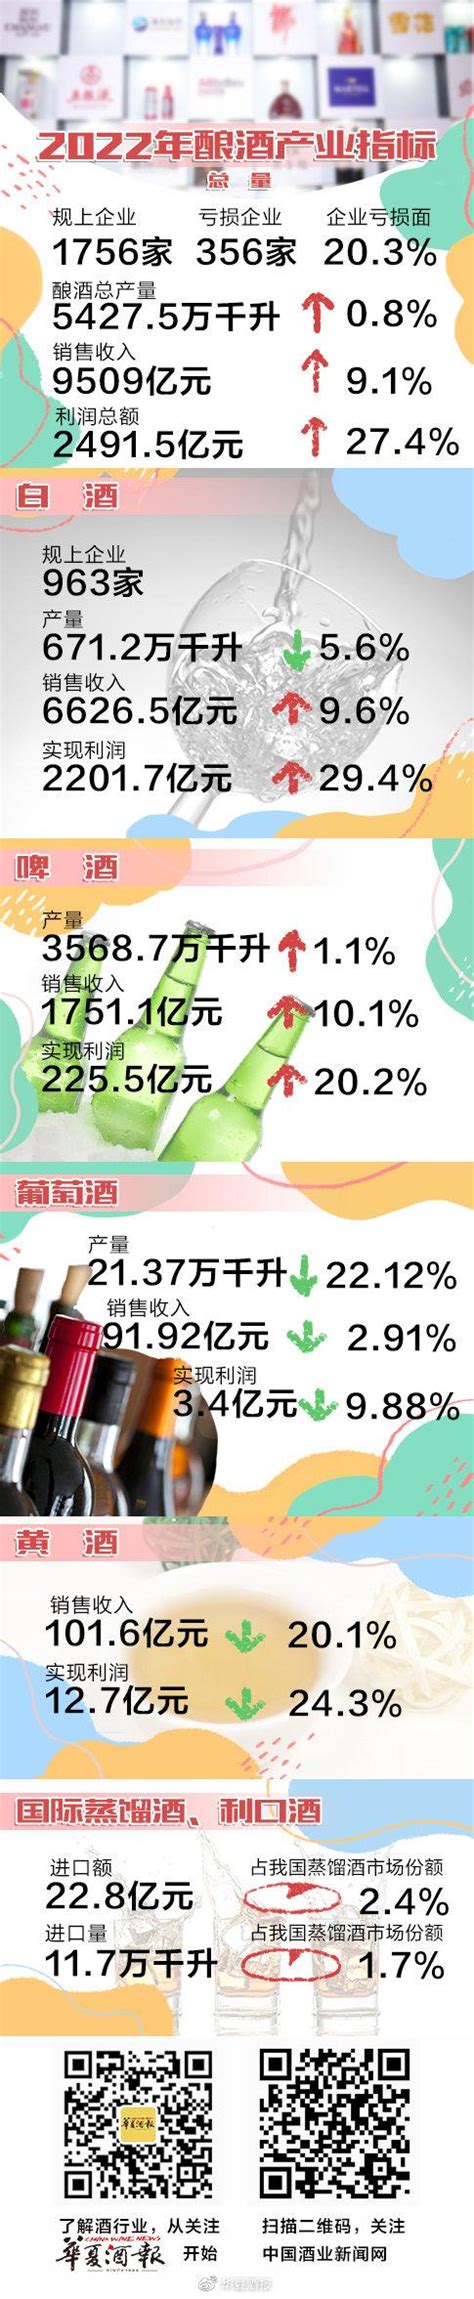 2022年中国酱香酒行业发展现状、行业发展趋势及发展建议分析[图]_智研咨询